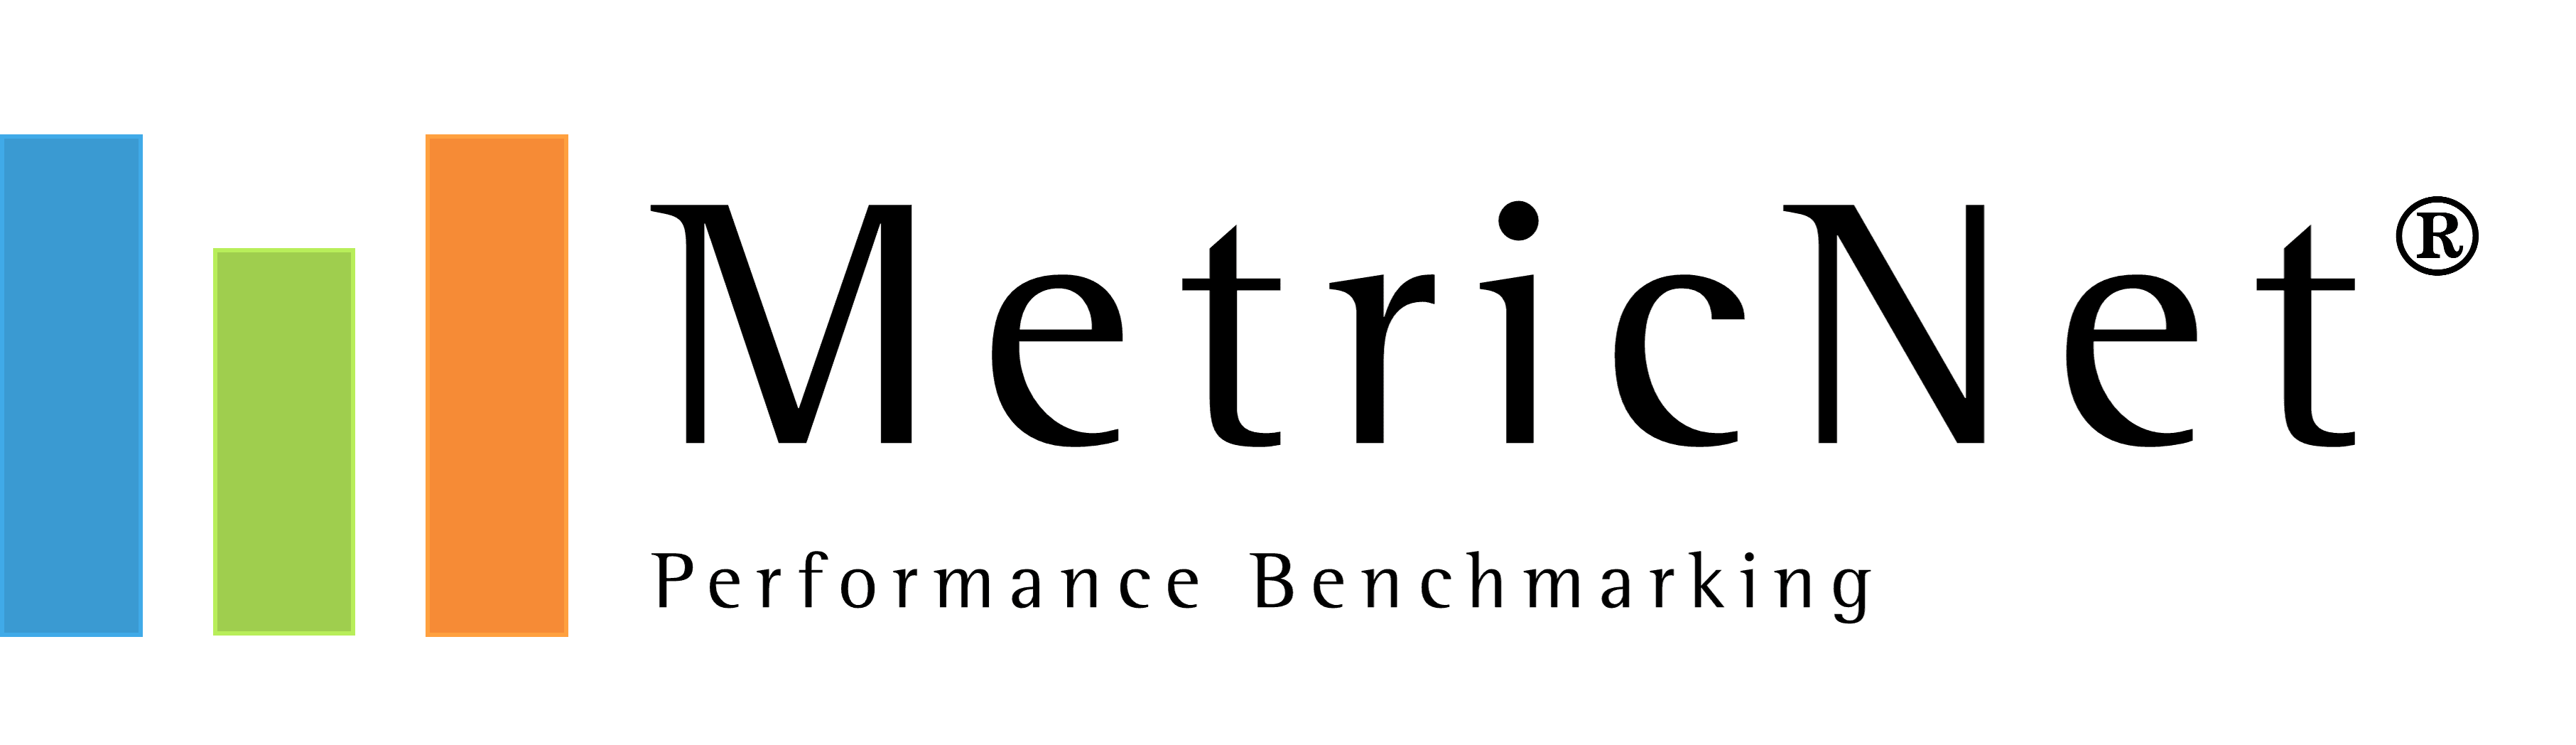 MetricNet-Logo-Hi-Res